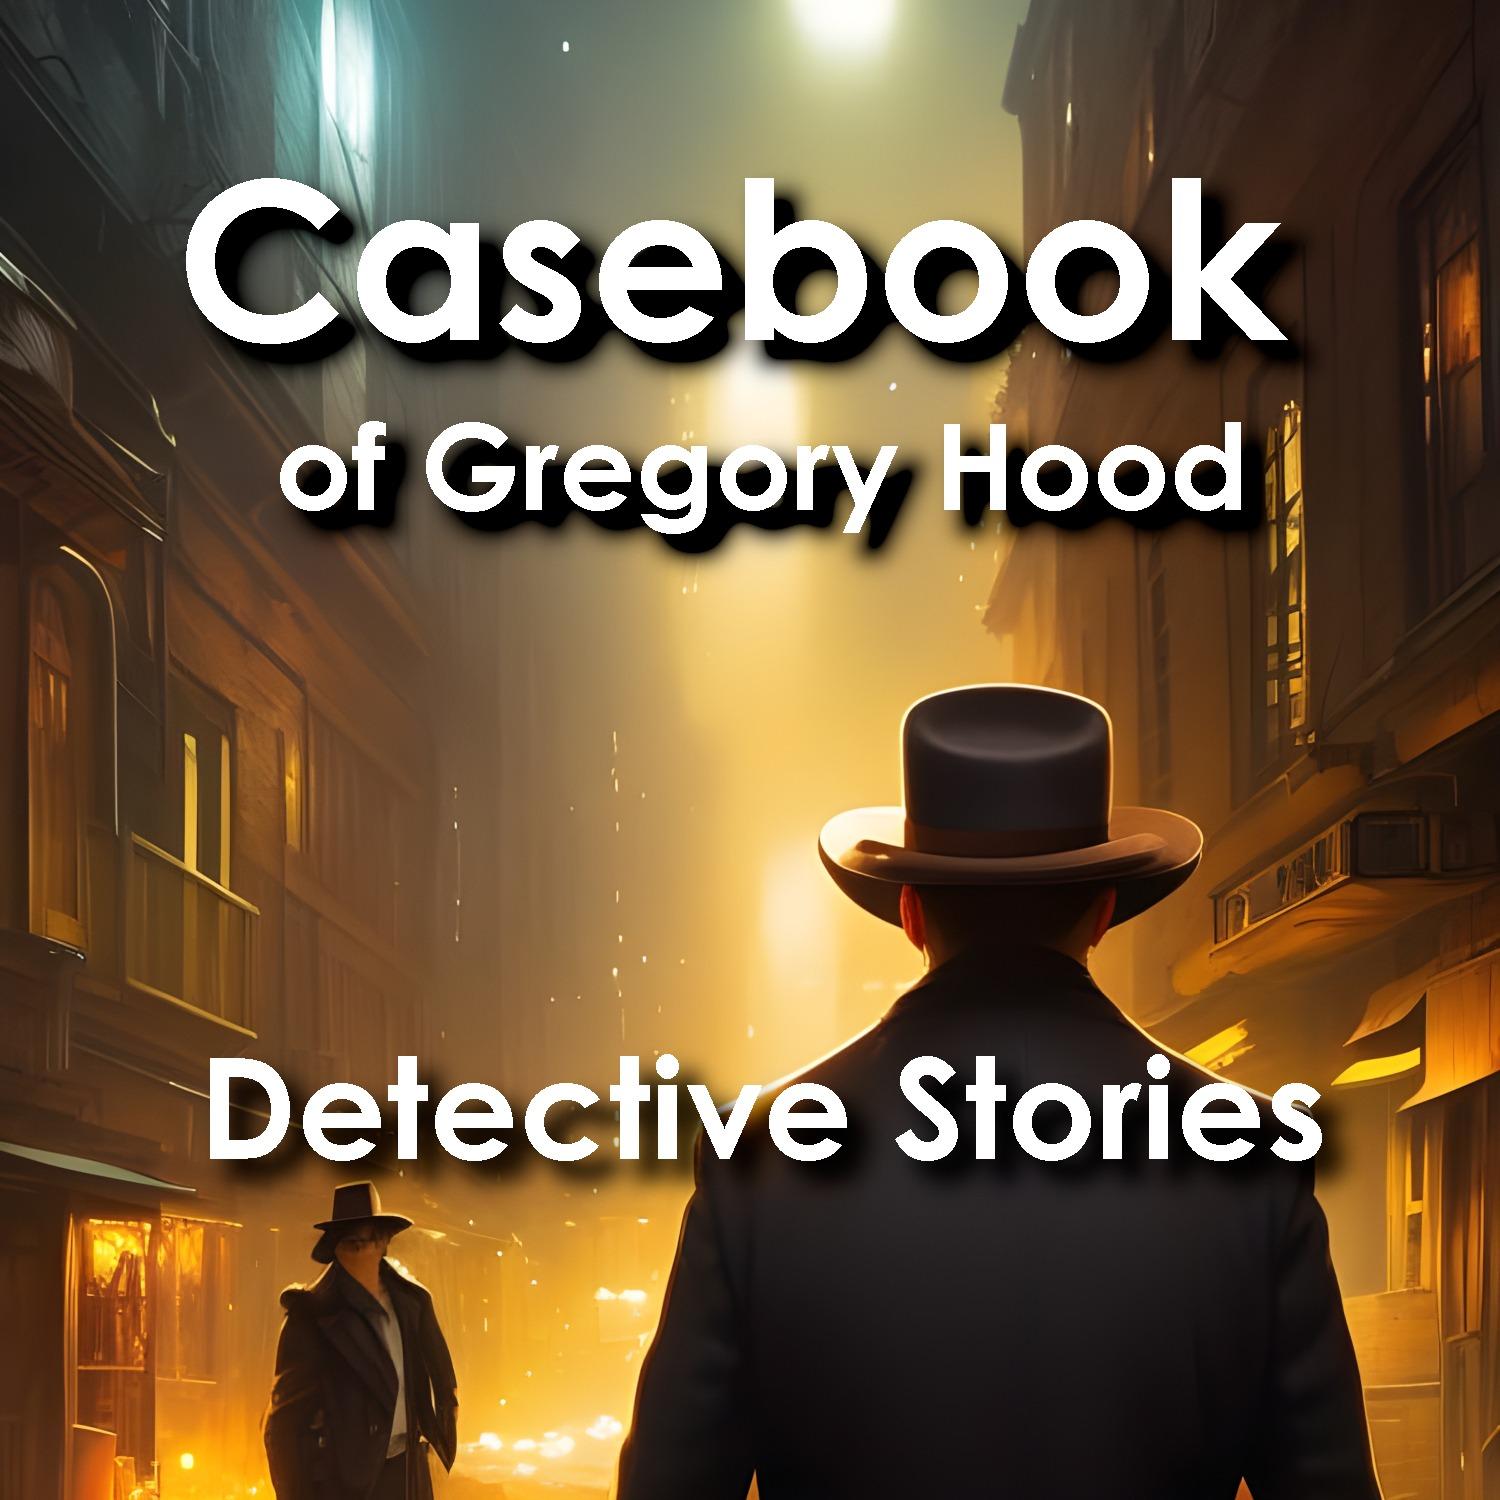 Casebook of Gregory Hood: Detective Stories